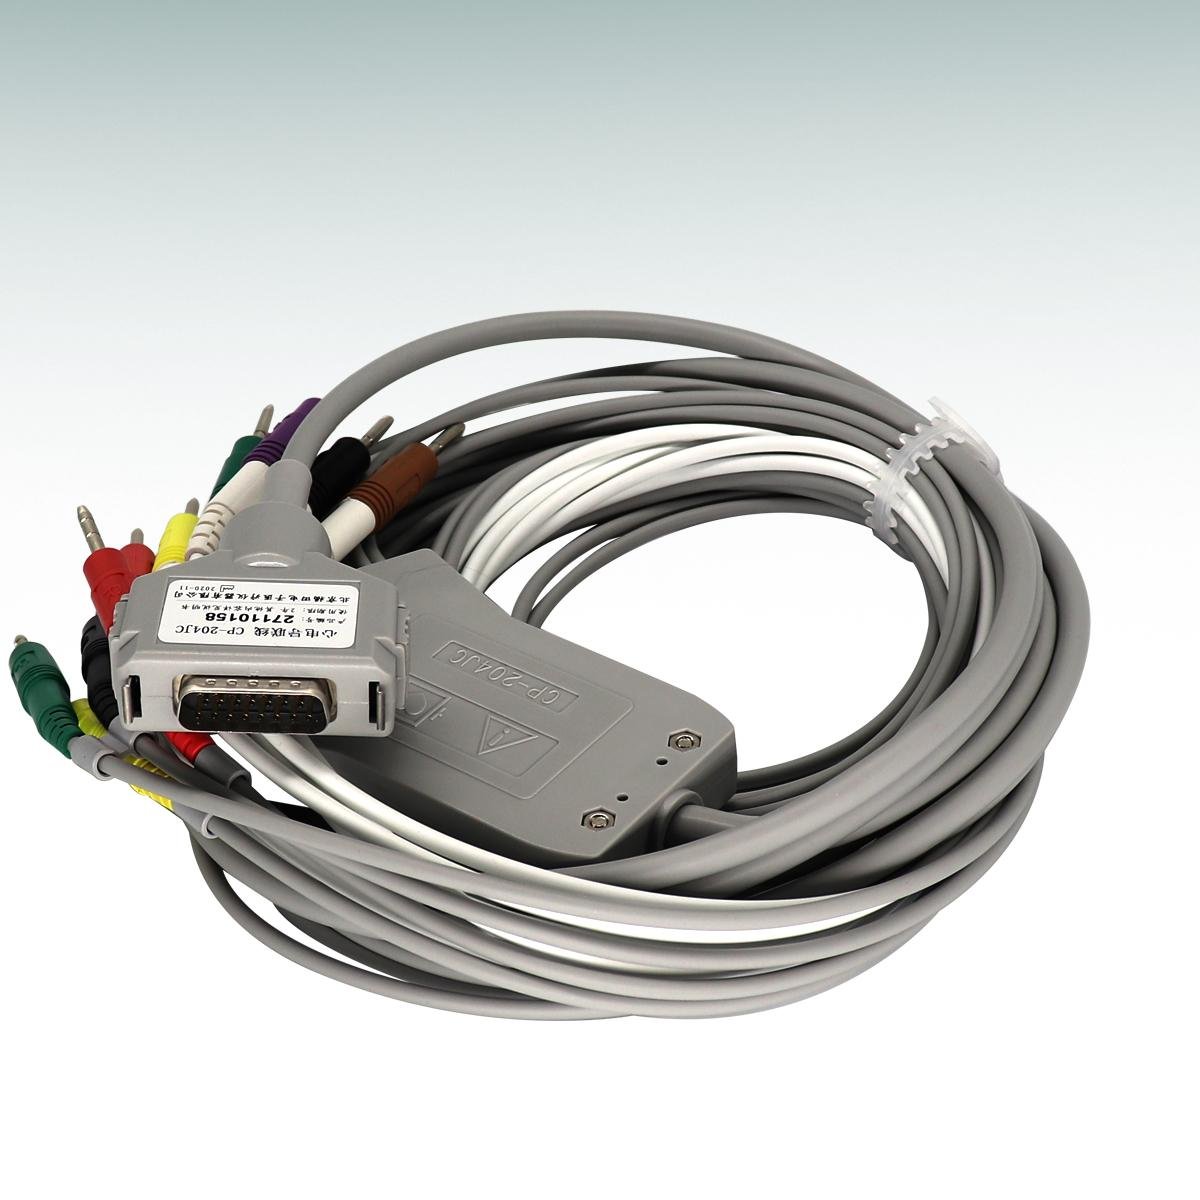 Fukuda cable leadwires for ECG machine 27110158 CP-204JC 15 pin ecg leadwire 2